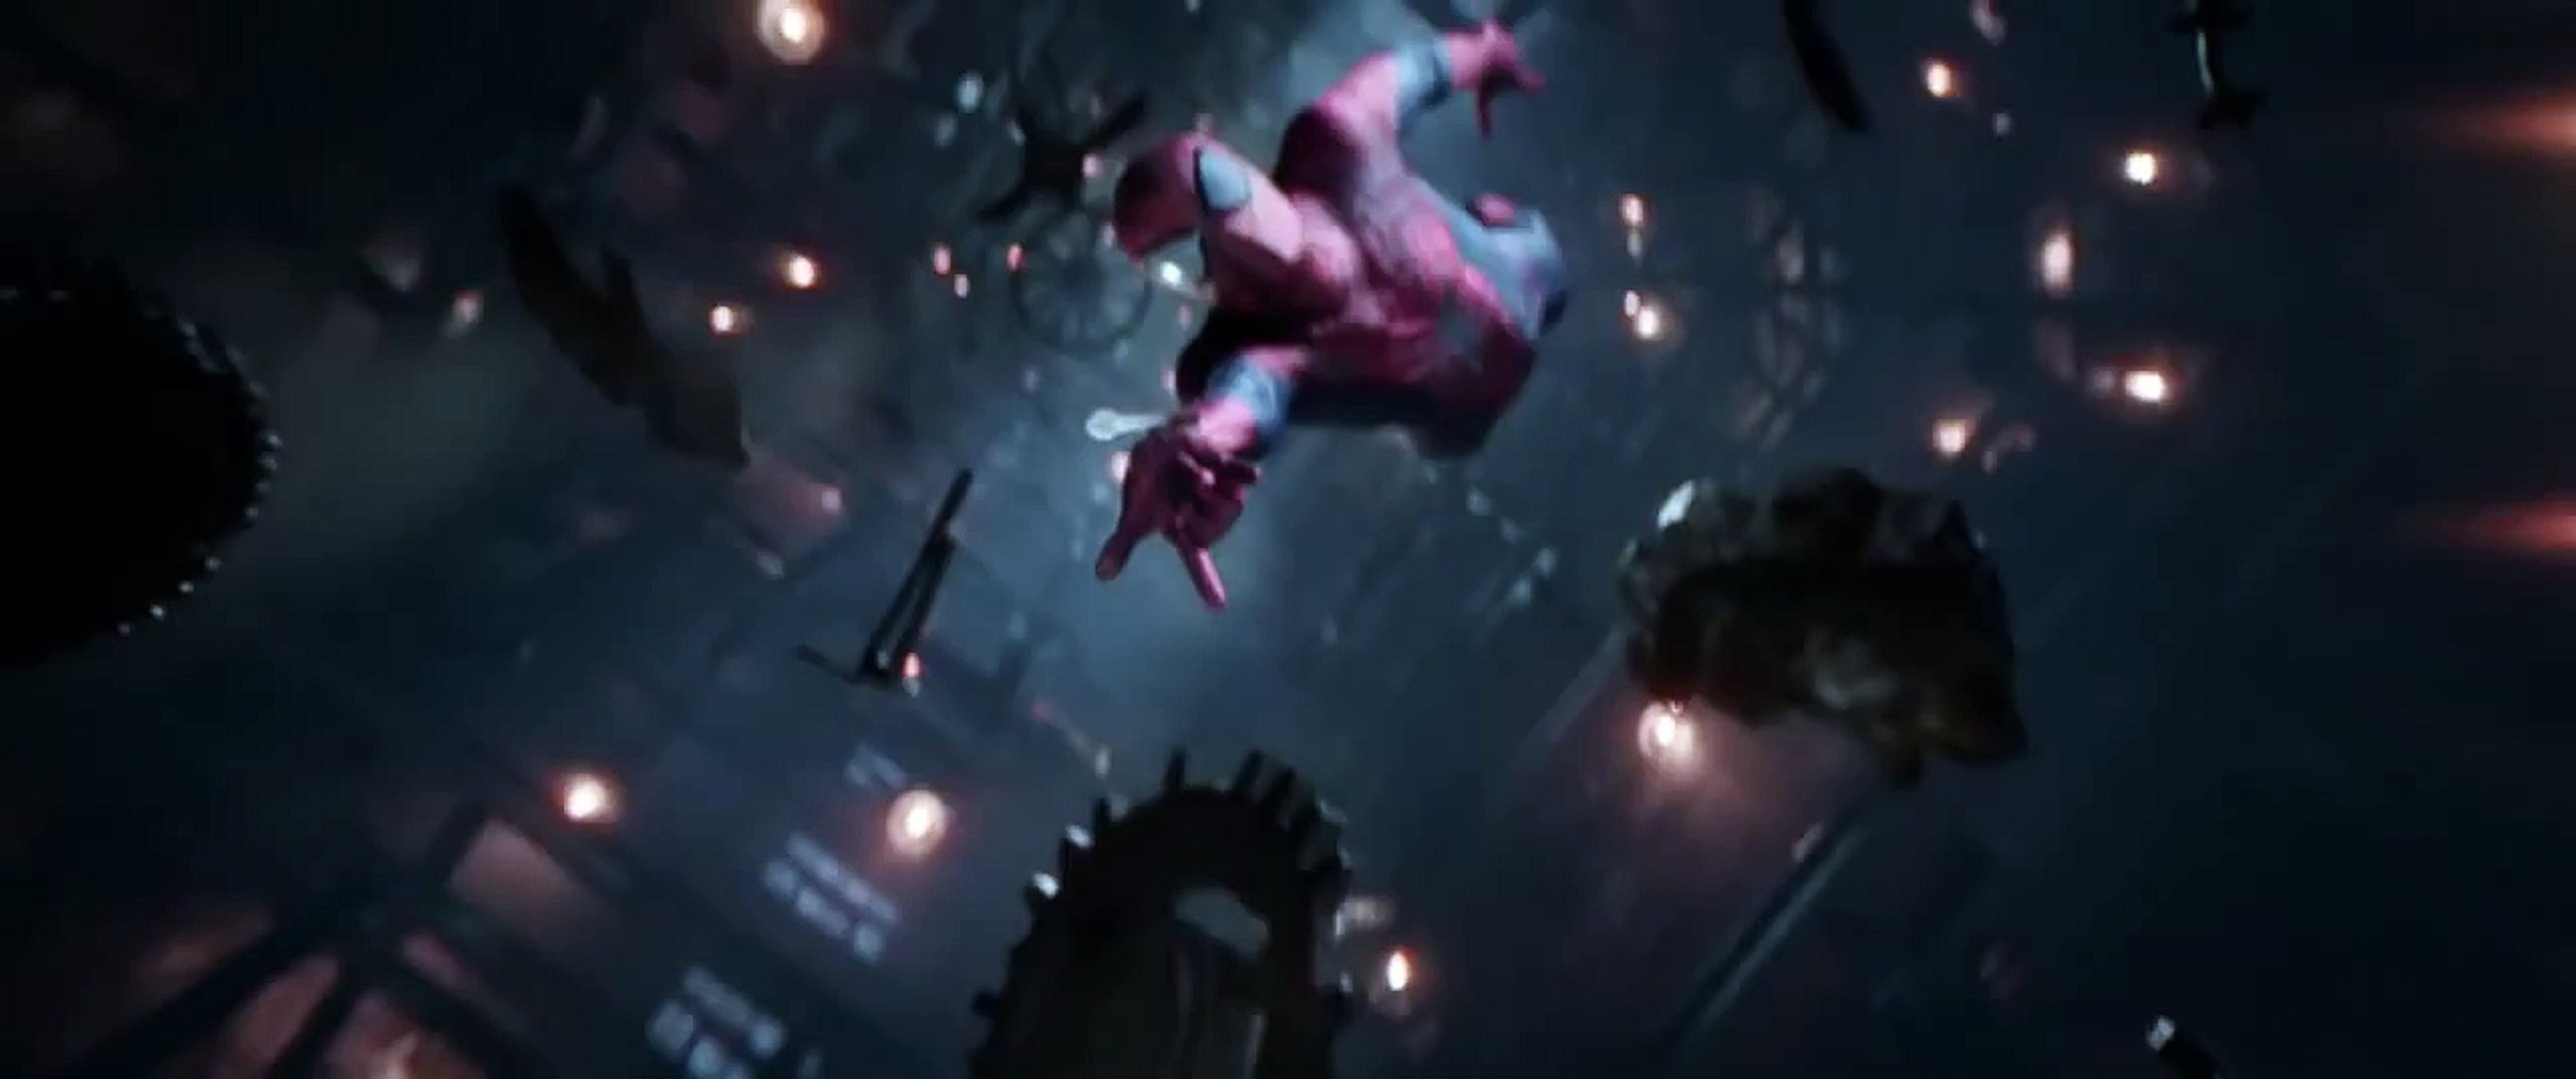 The Amazing Spider-Man 2 - La mort de Gwen stacy - Vidéo Dailymotion